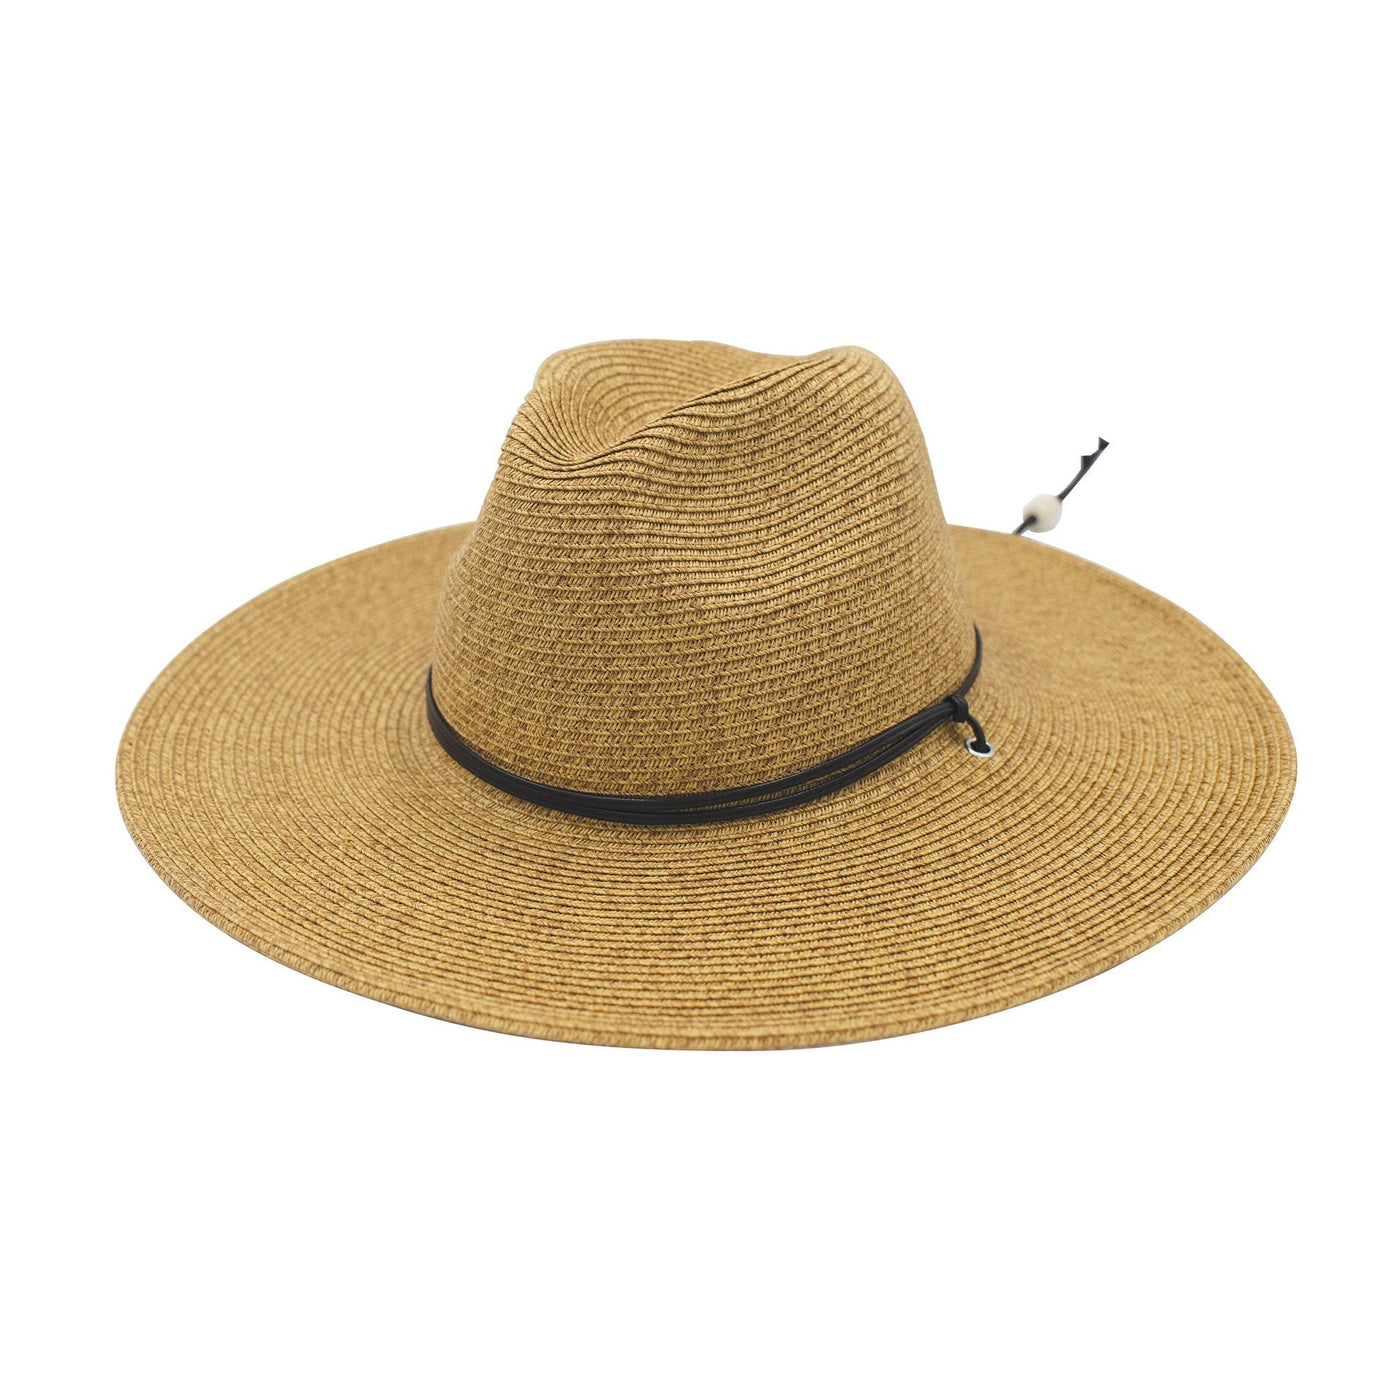 SUN BRIM - El Campo 4" Brim Sun Hat - UPF50 Sun Protection With Chin Cord - San Diego Hat Co.